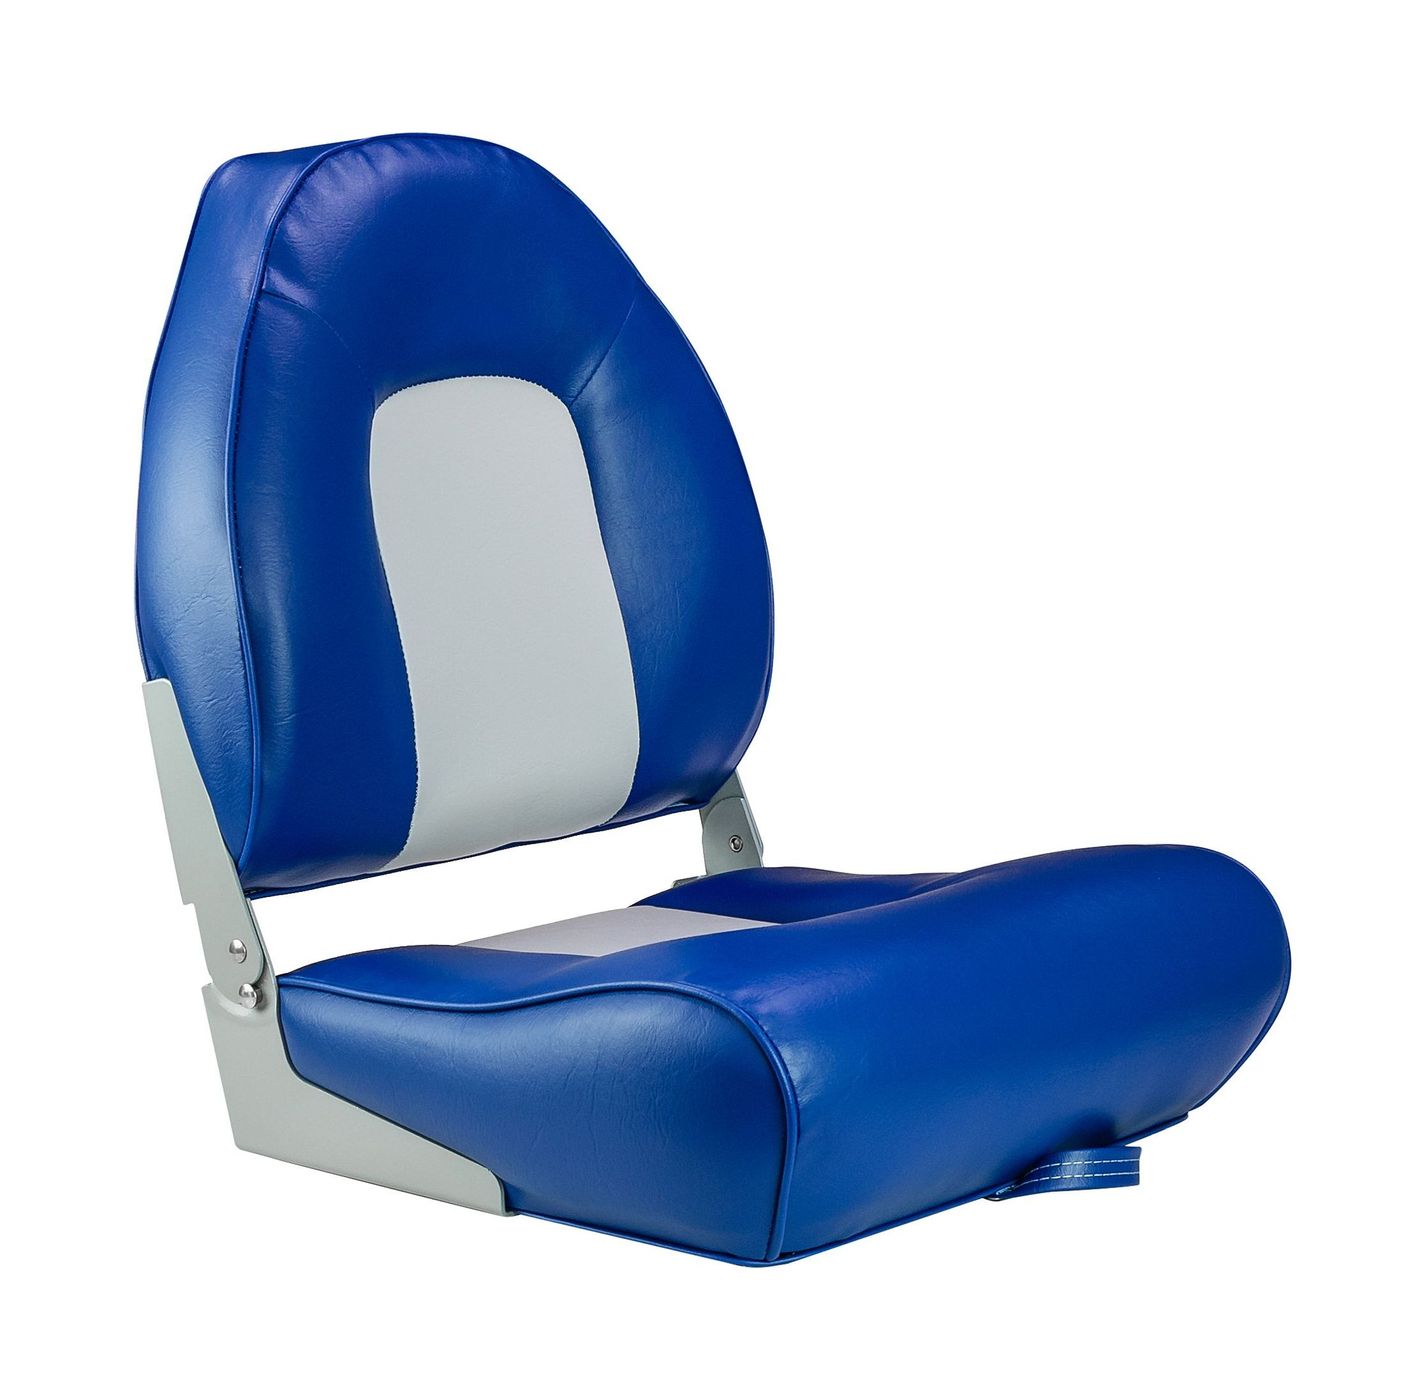 Кресло мягкое складное, обивка винил, цвет синий/серый, Marine Rocket 75116GB-MR кресло мягкое складное обивка винил серый синий marine rocket 75109gb mr